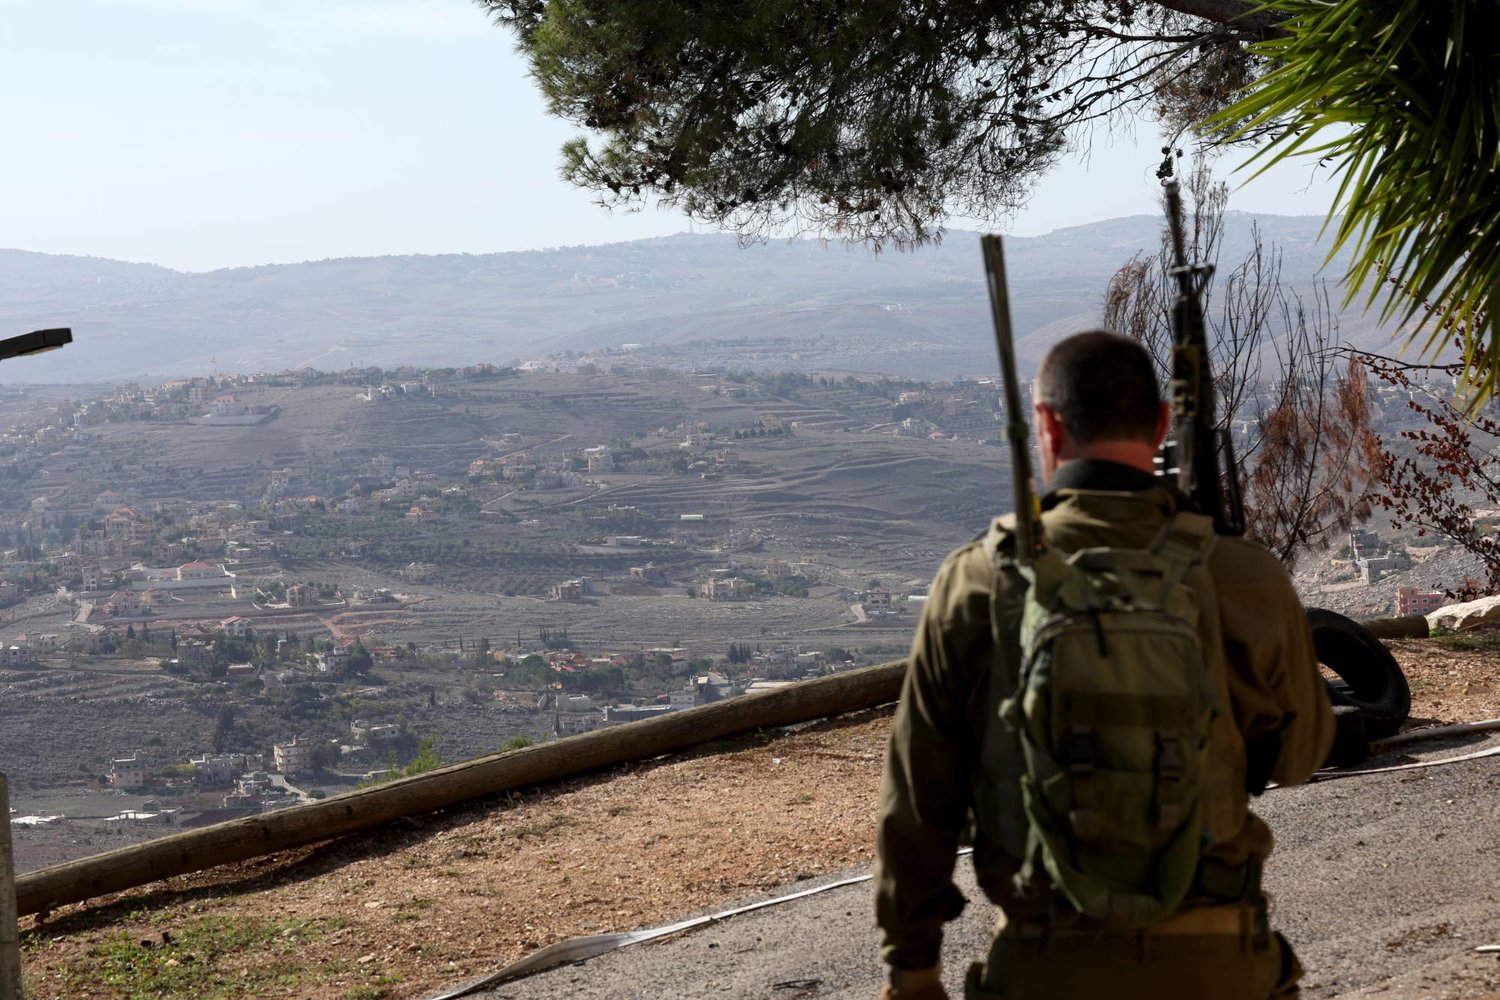 عنصر من مجموعة رد أول مسلحة تحرس «كيبوتس المنارة» على الحدود الإسرائيلية اللبنانية مع ظهور قرية حولا اللبنانية في الخلفية 30 نوفمبر 2023 (إ.ب.أ)